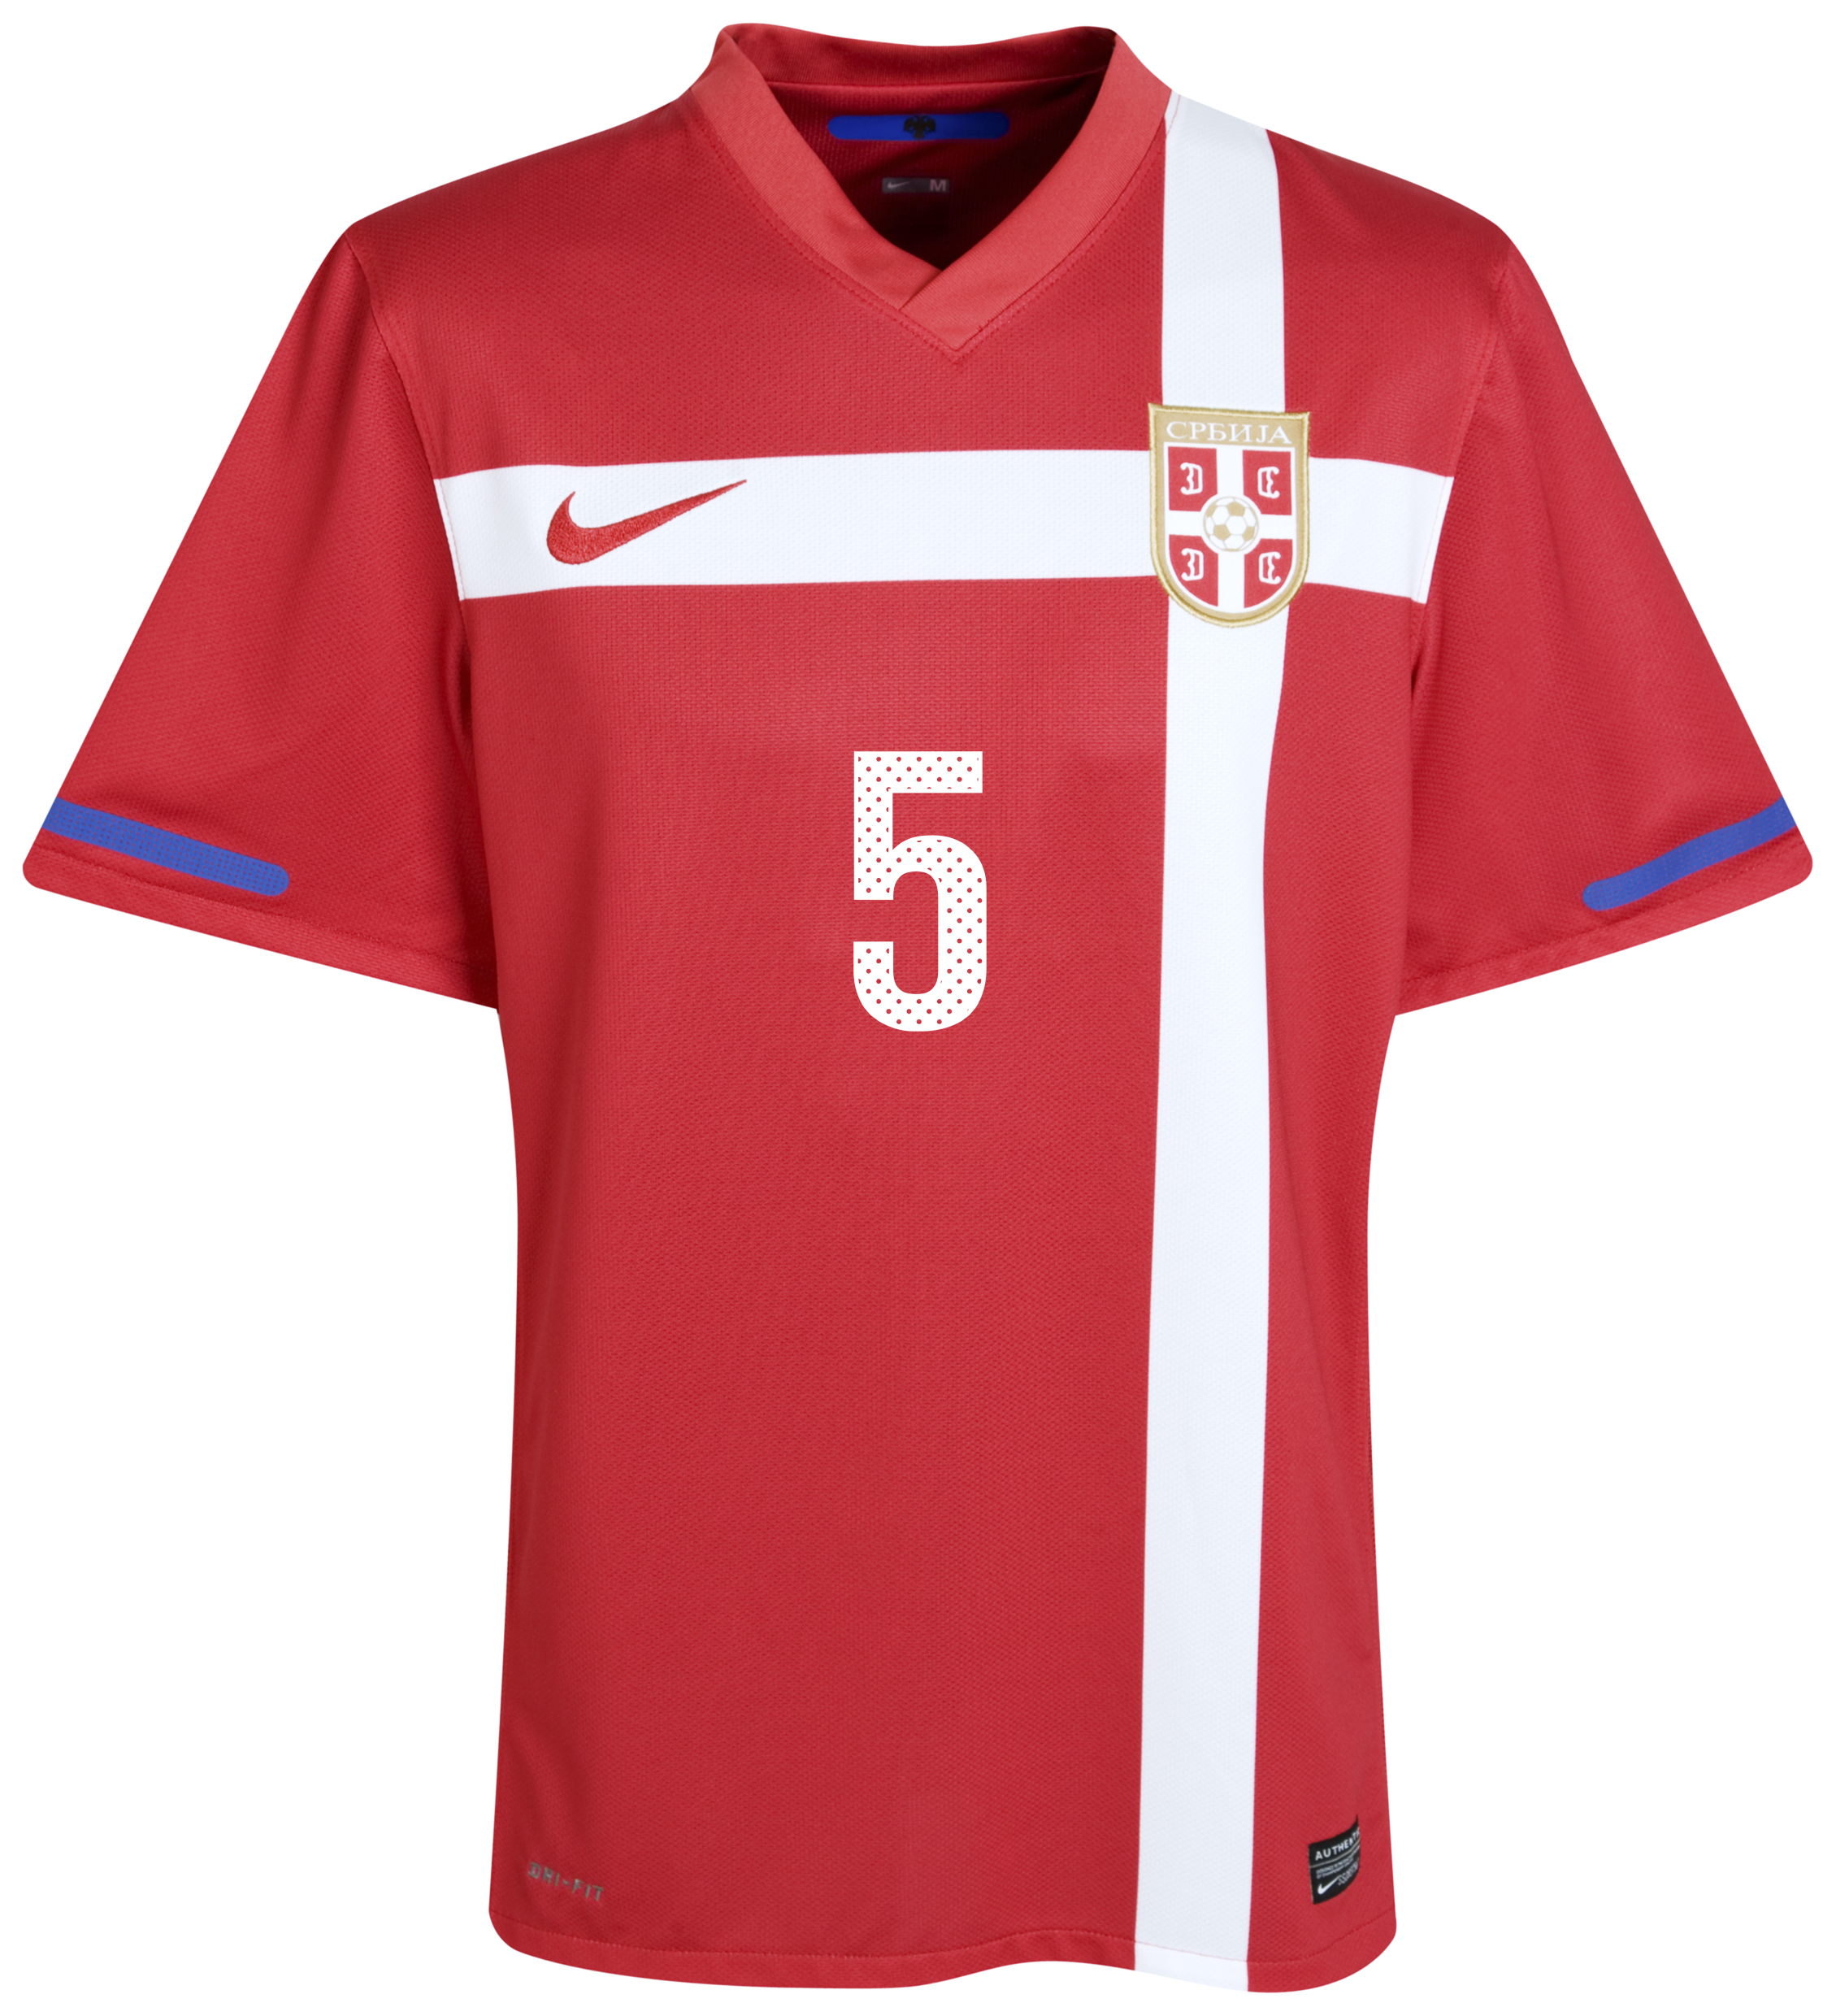 ملابس الفرق في كأس العالم  2010 Kb-71658a